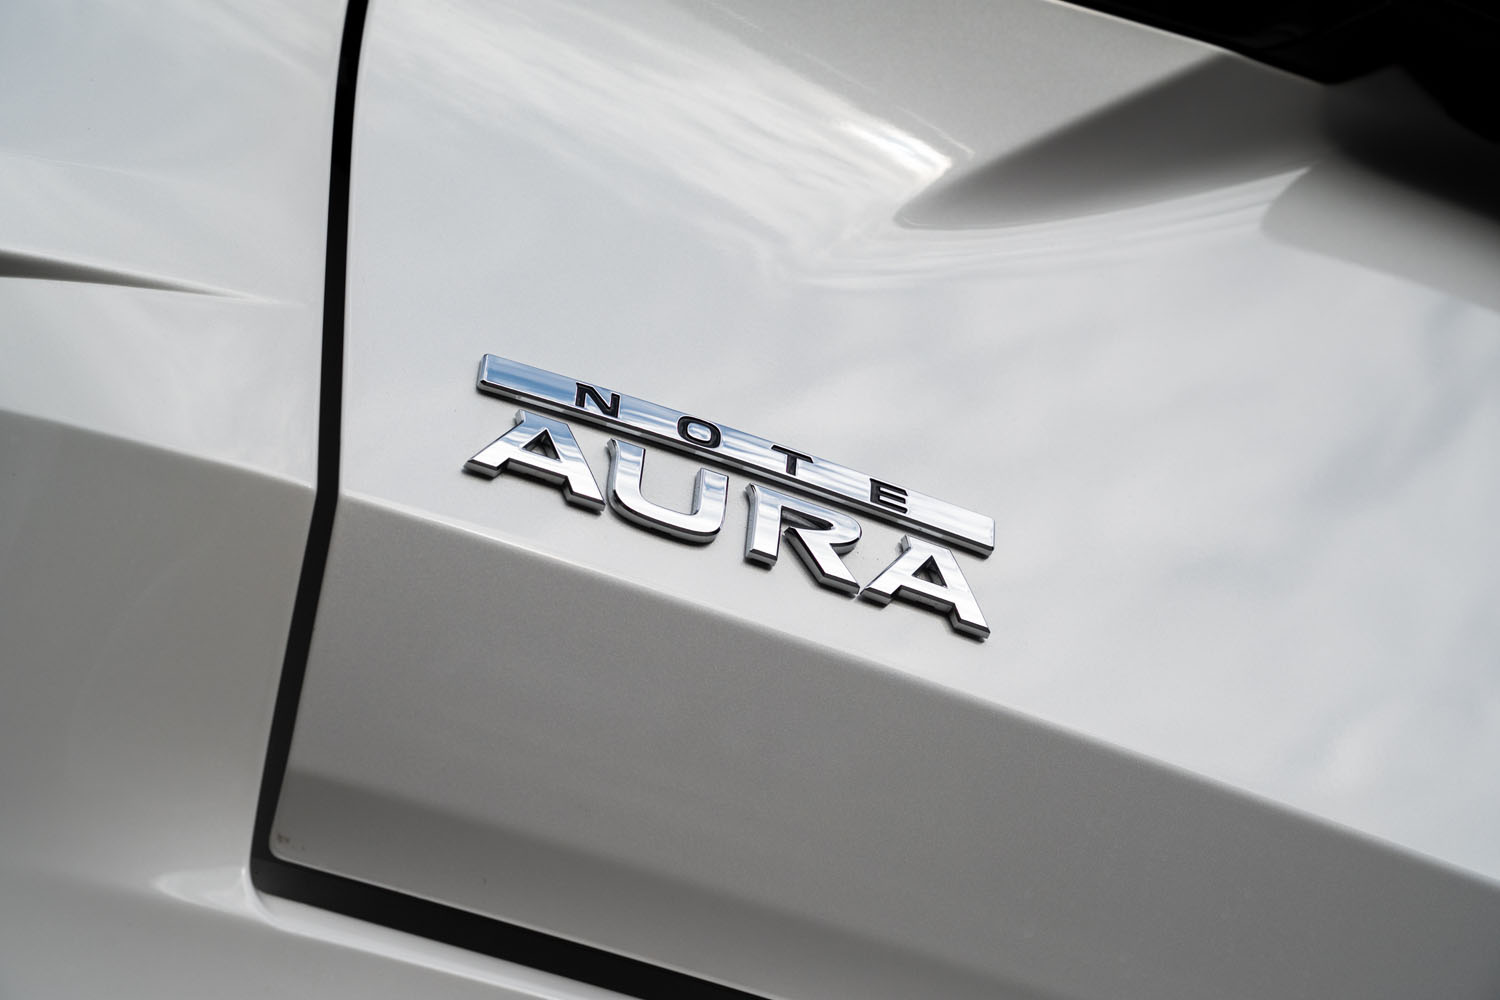 テールゲートに装着された「NOTE AURA」のバッジ。同車は「ノート オーラ」だったり「オーラ」だったり「オーラe-POWER」だったりと、カタログやウェブサイトなどで使われる車名の表記が定まっていない。